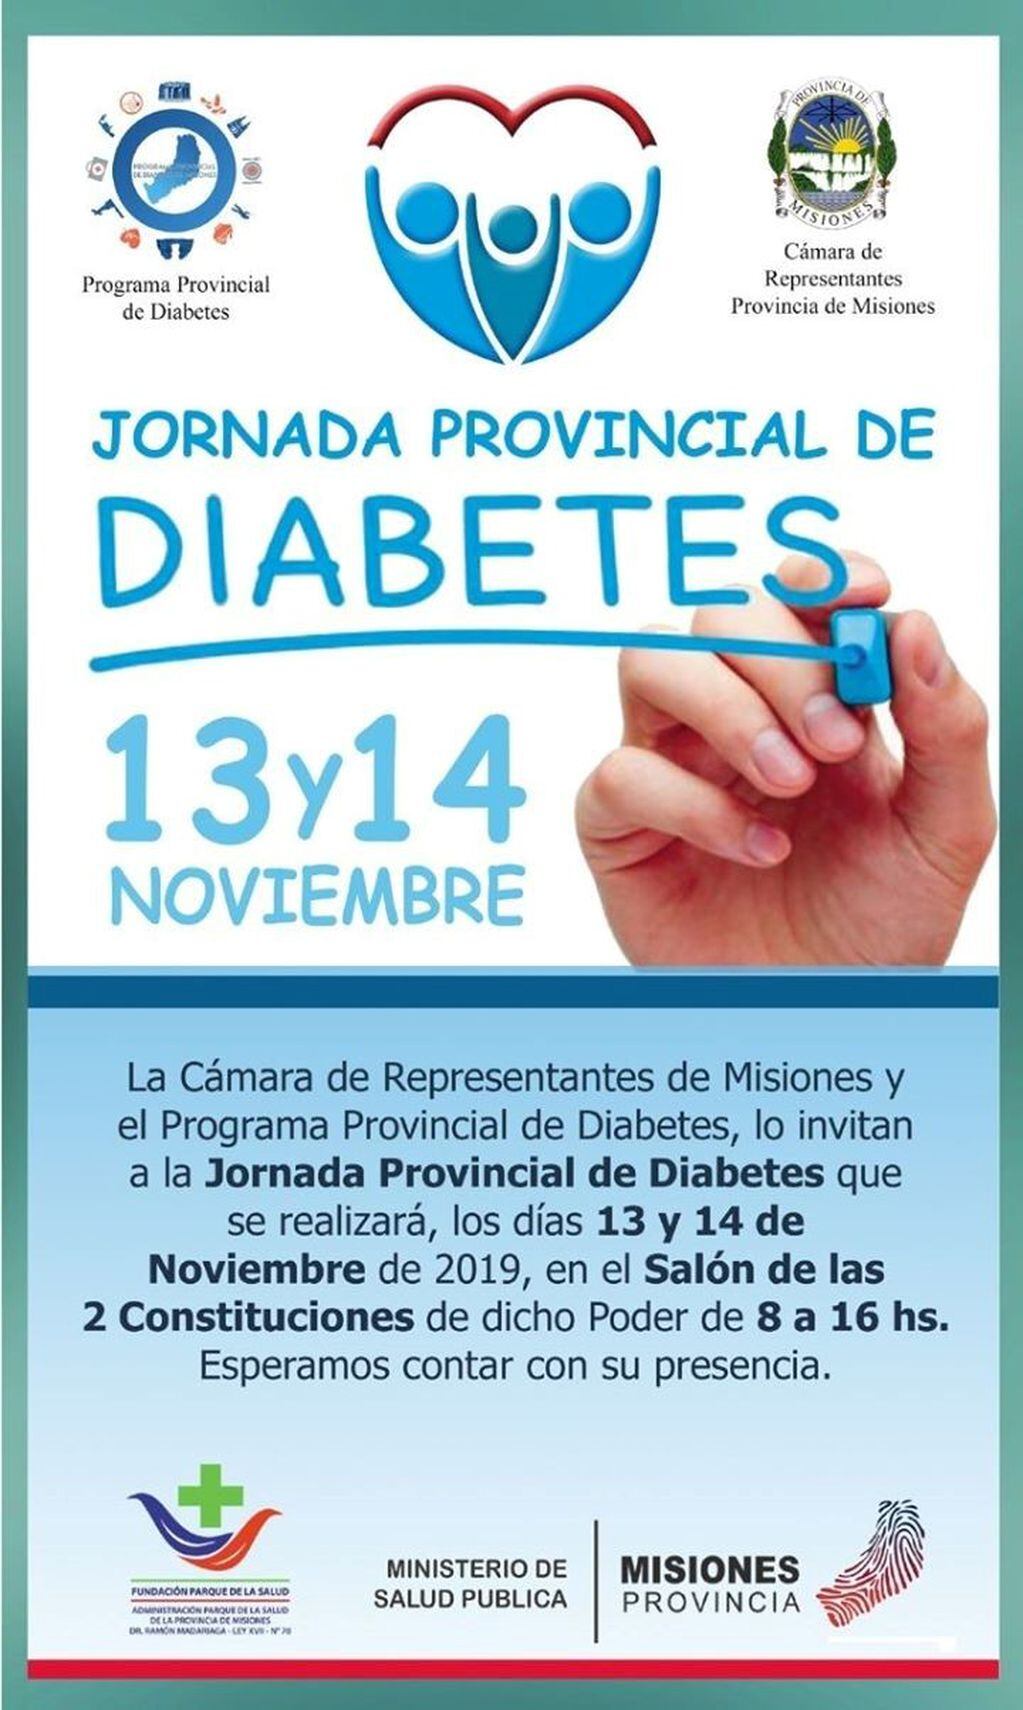 Jornada Provincial de Dabetes en Misiones, días 13 y 14 de noviembre.